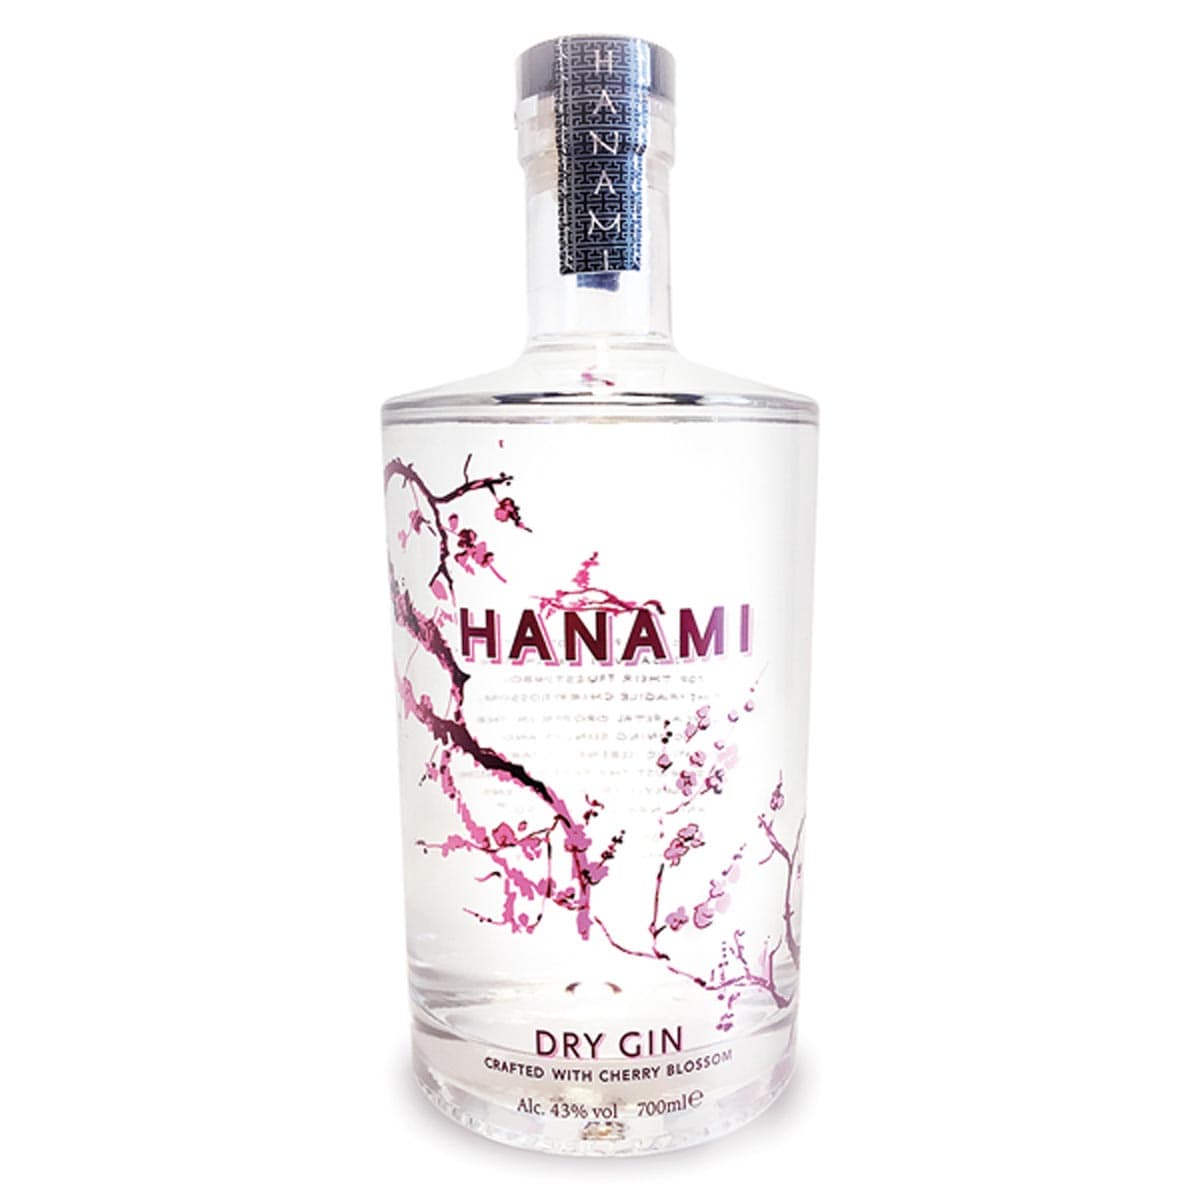 Hanami Dry Gin | kaufen bei online